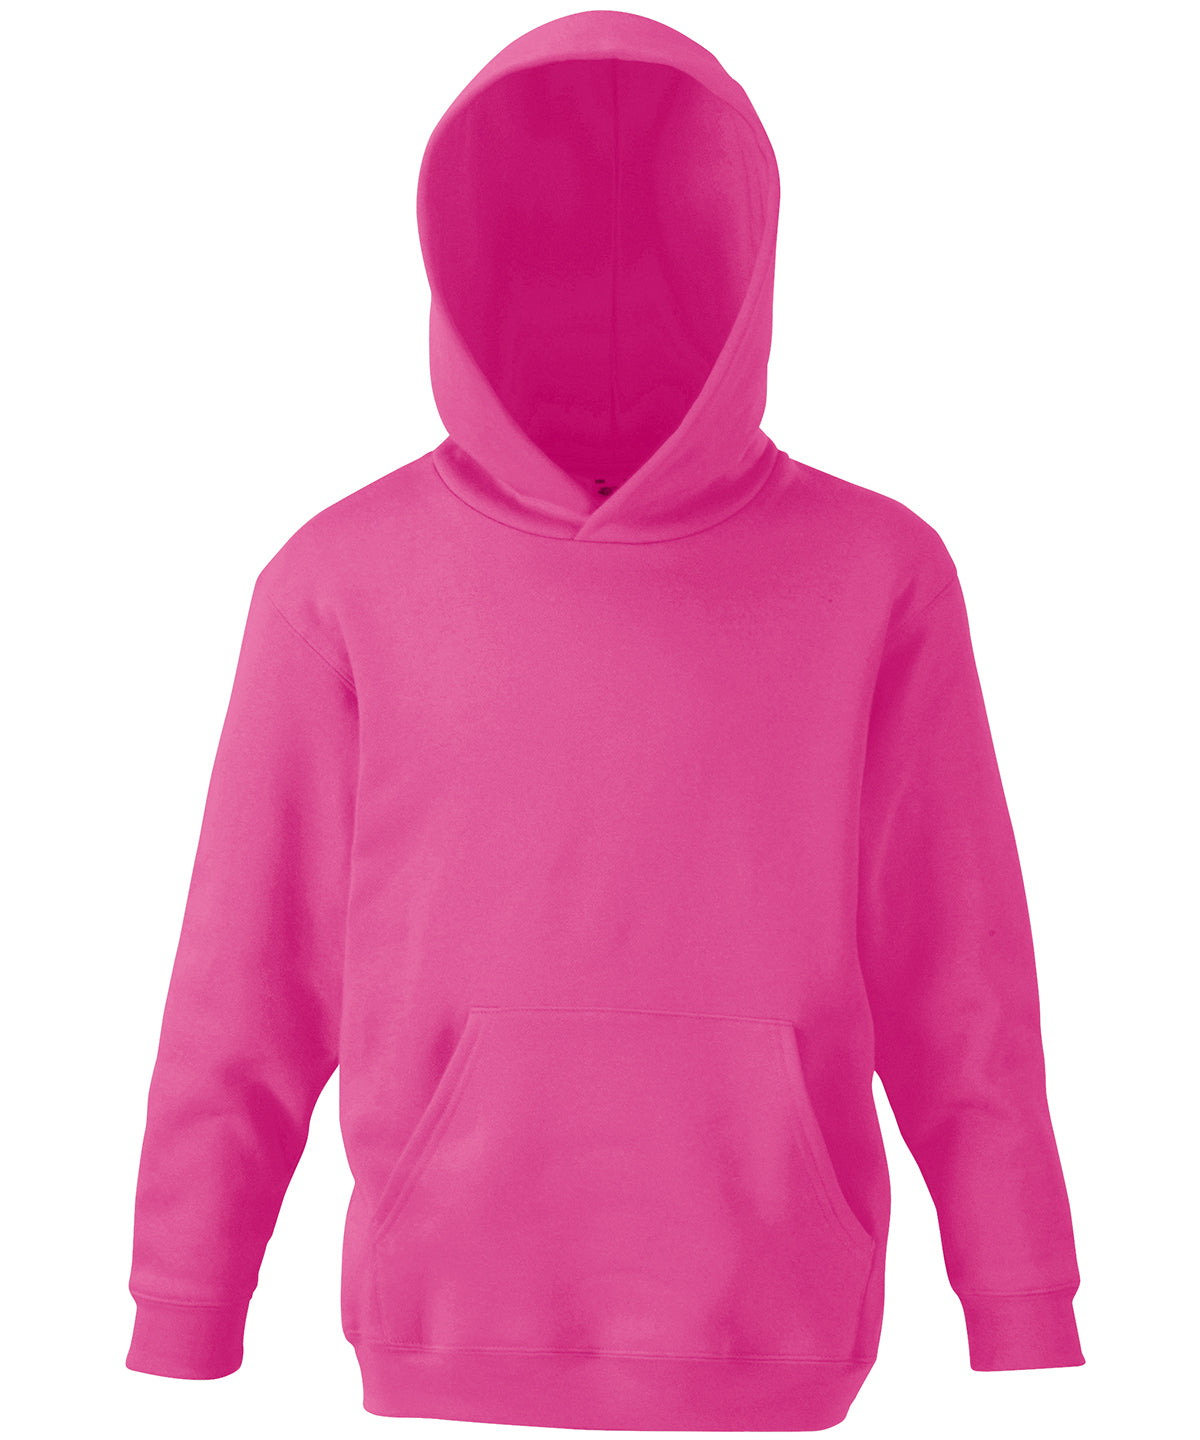 Personalised Hoodies - Black Fruit of the Loom Kids classic hooded sweatshirt